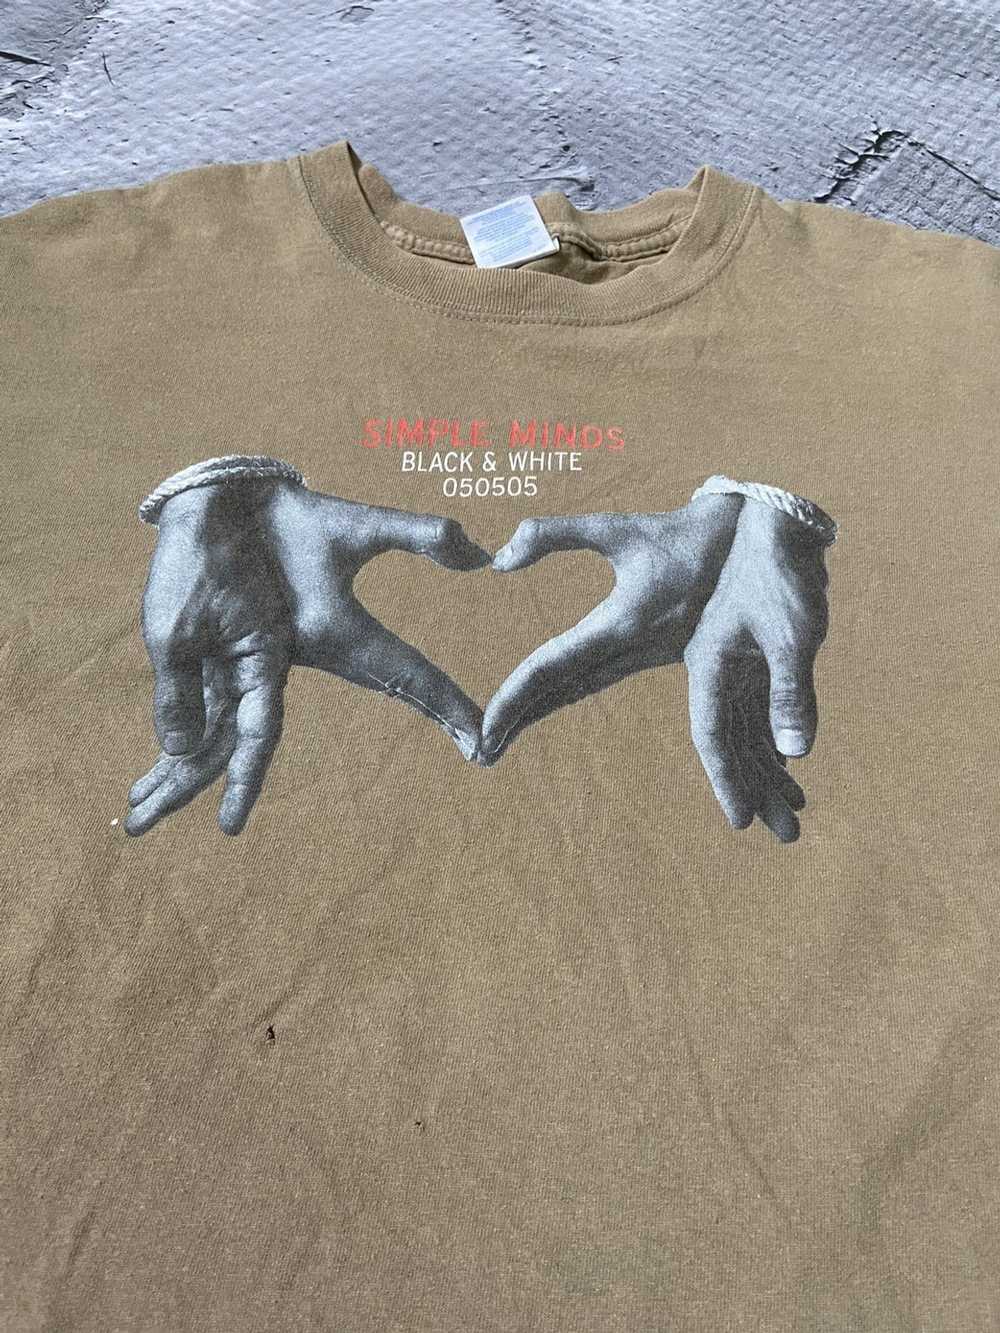 Band Tees × Gildan × Rock T Shirt Gildan Simple M… - image 3